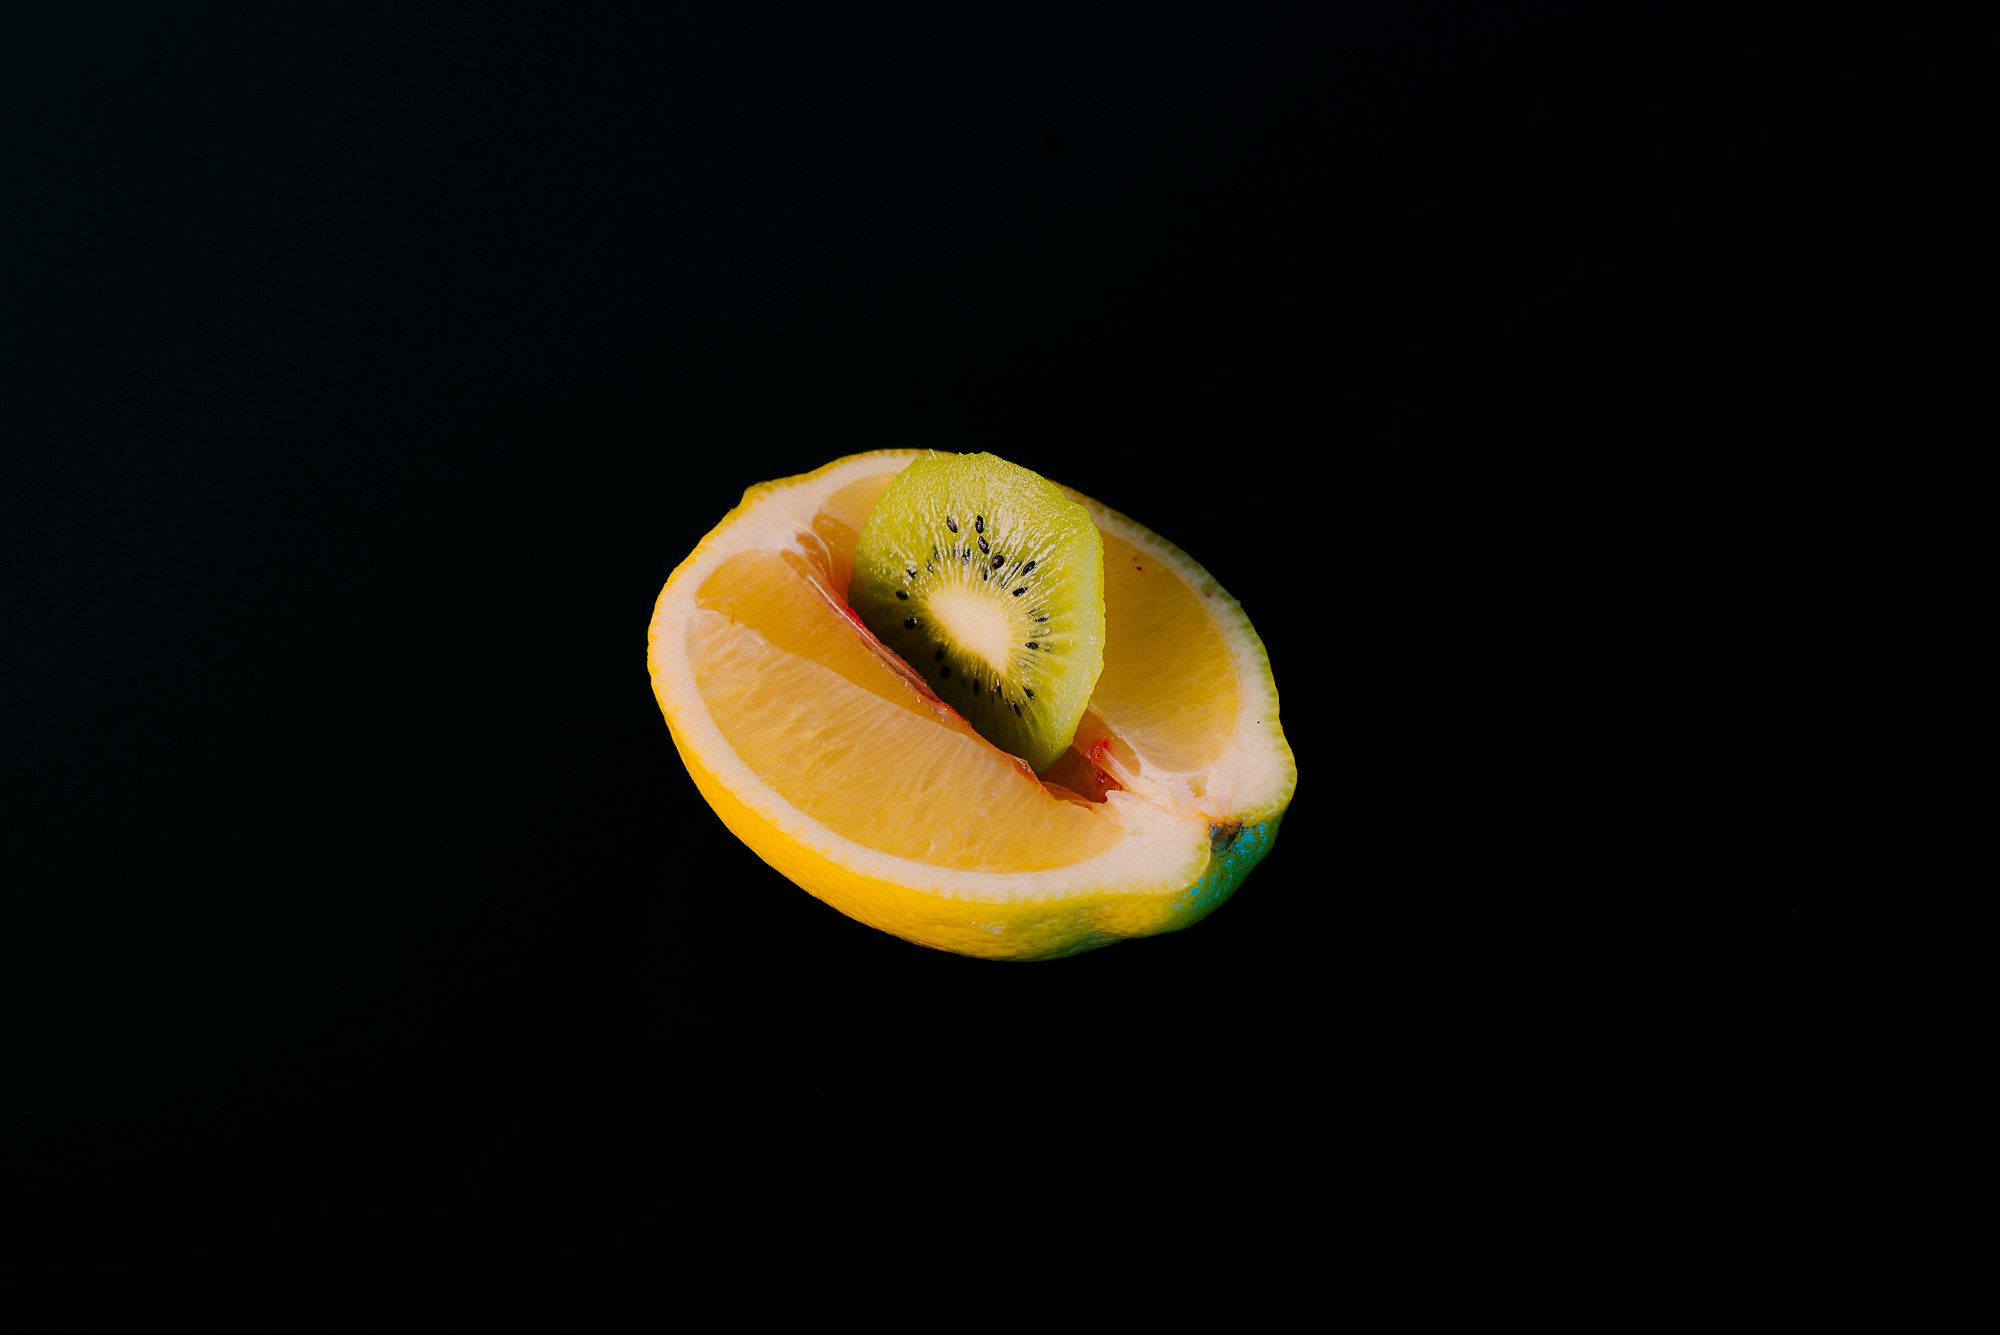 kiwi in a lemon